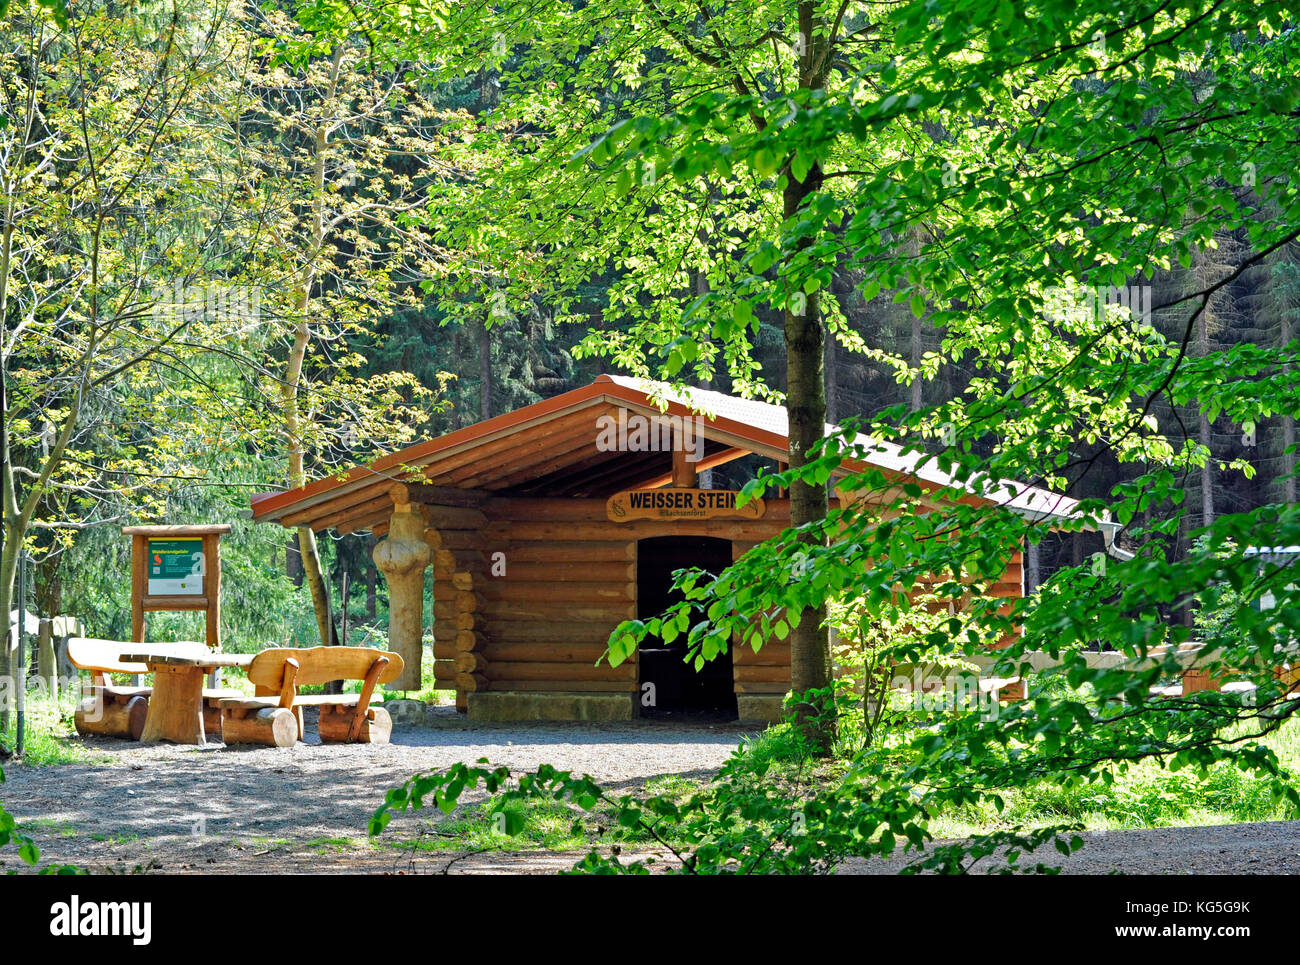 Alojamiento cabaña en el lugar de descanso 'Weisser Stein' en la zona de recreo local Colditzer Wald en la zona de bosque Leipzig Foto de stock